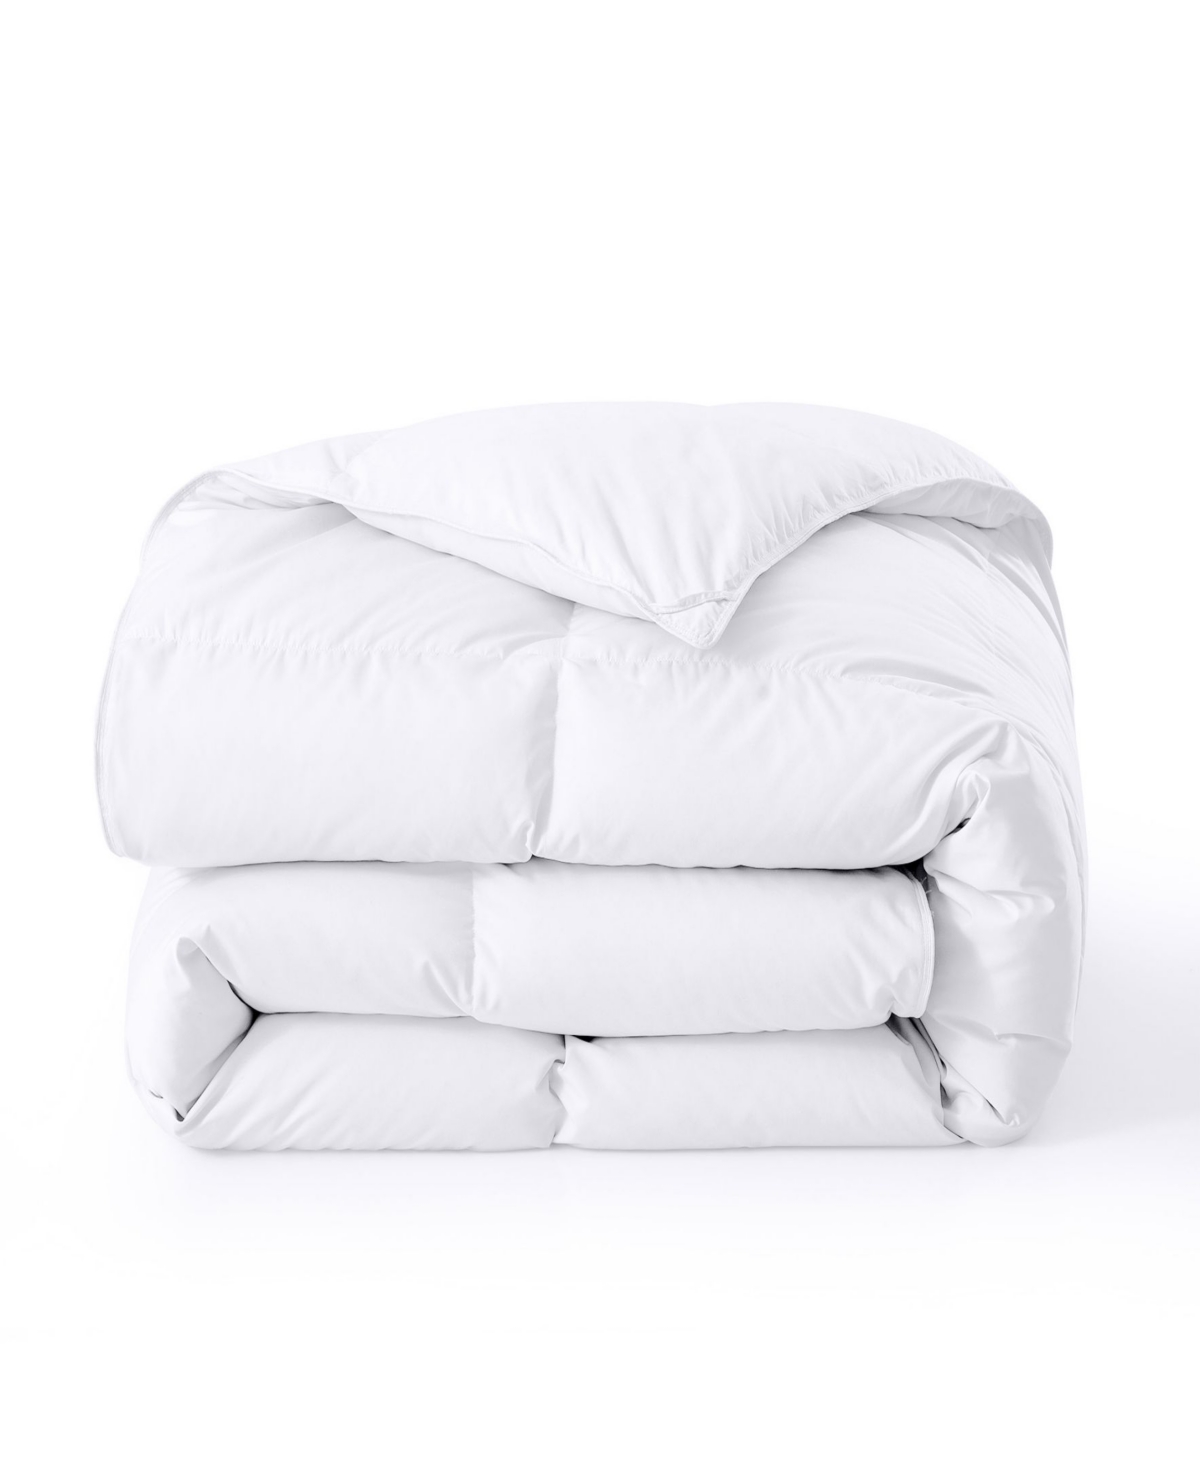 Unikome Cozy 360tc All Season Down Feather Fiber Comforter, Twin In White